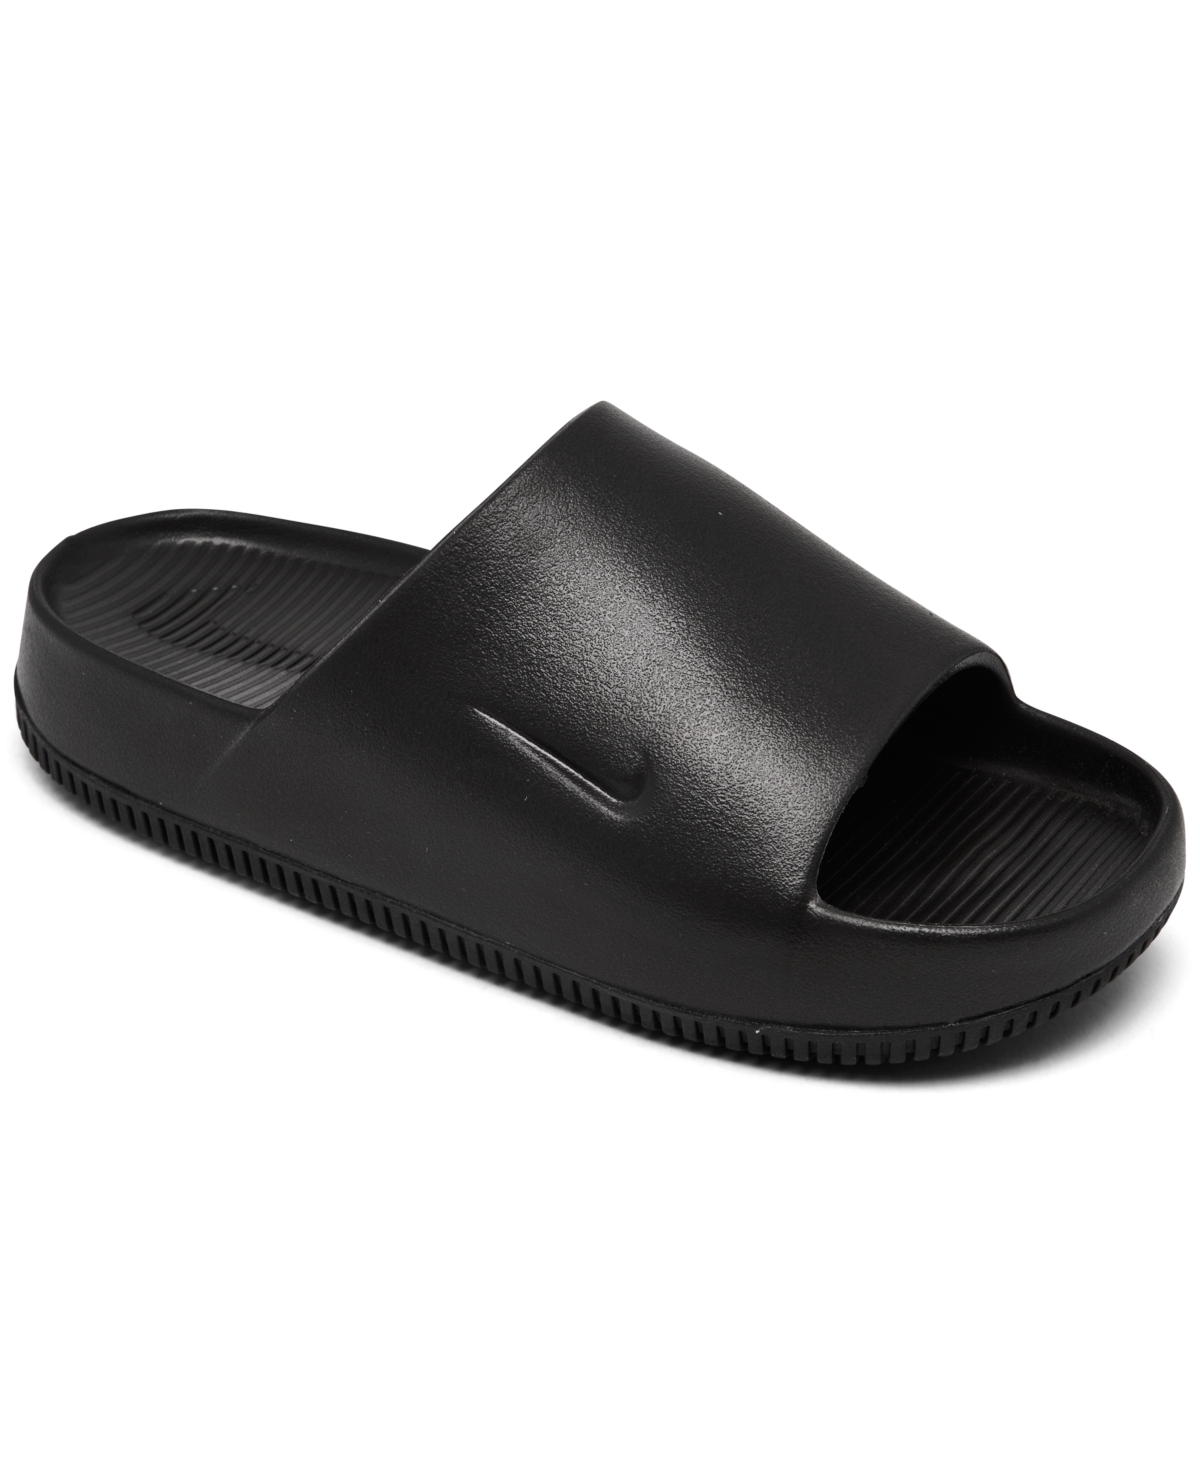 Men's Calm Slide Sandals from Finish Line - Black